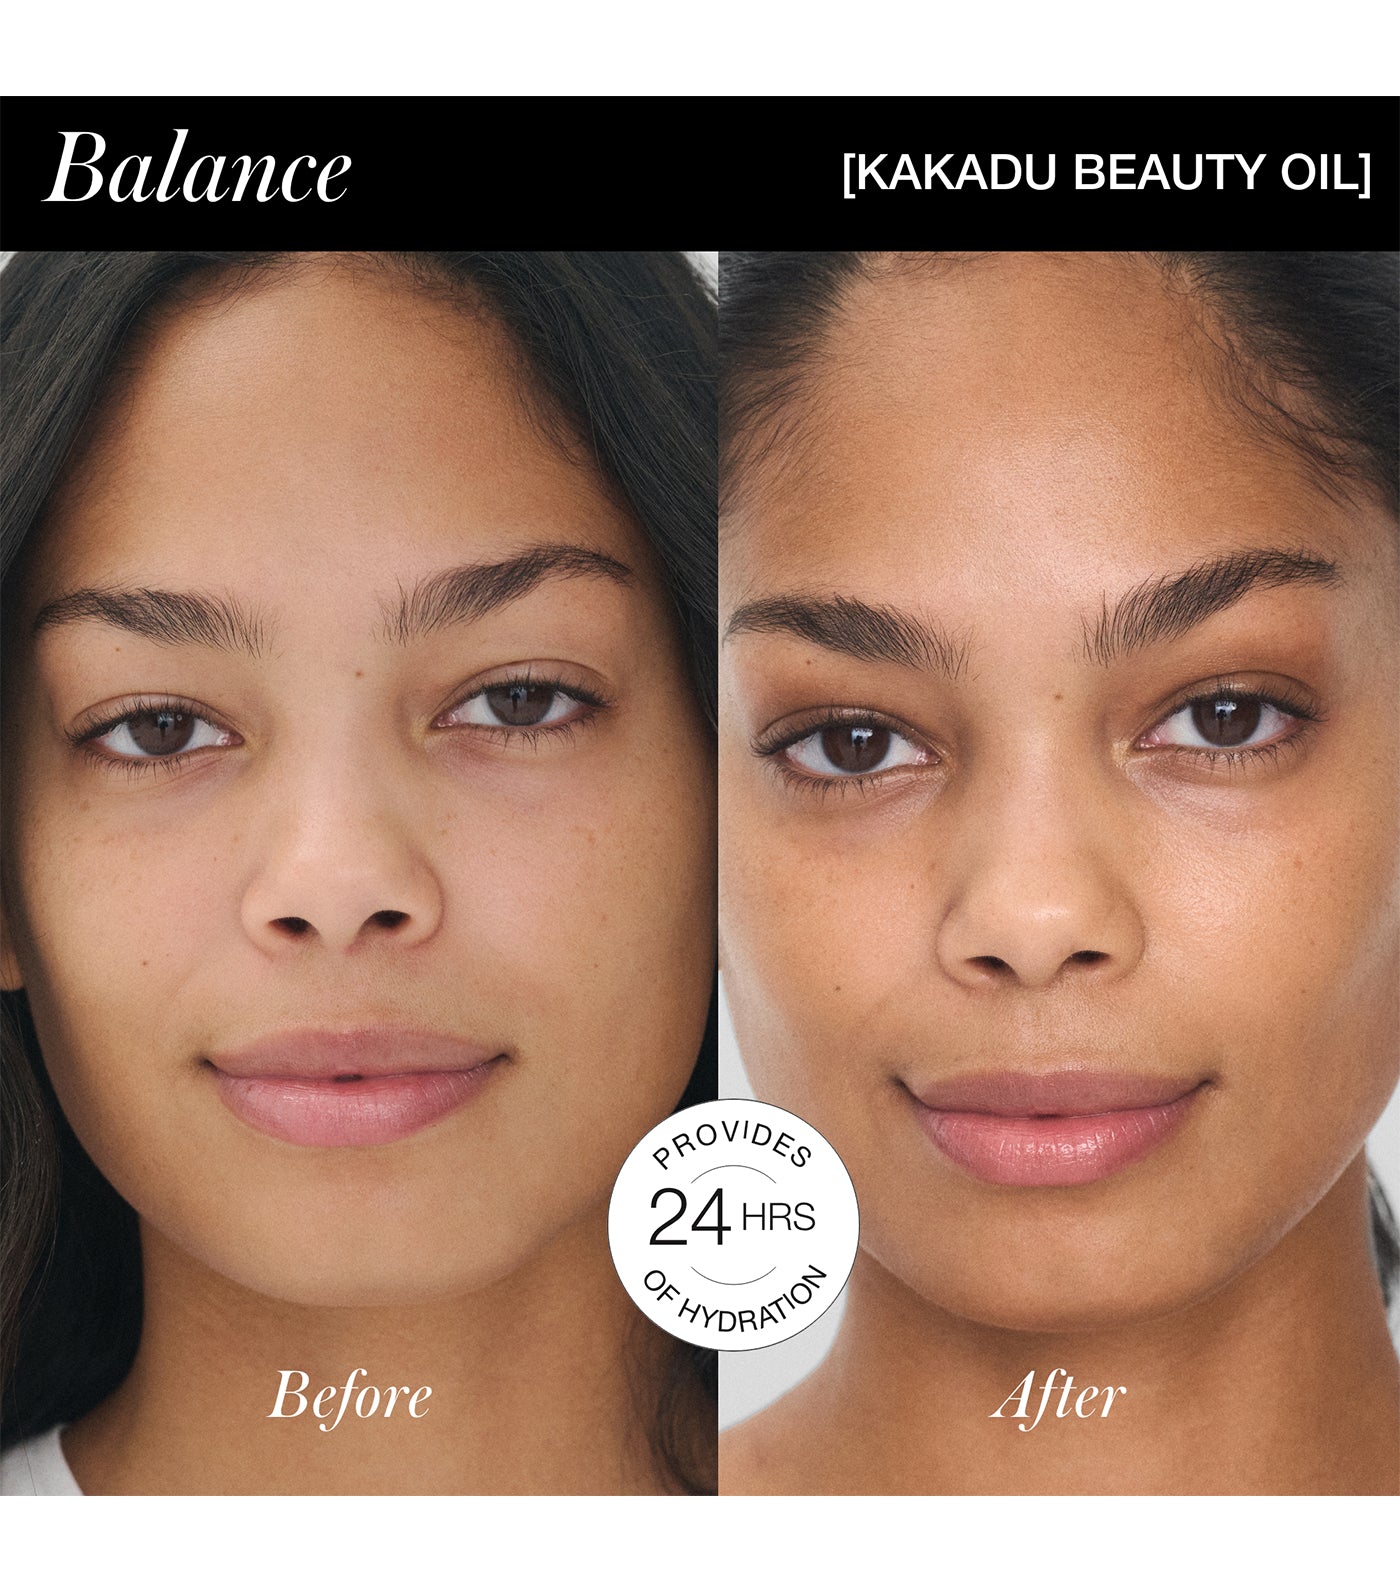 Kakadu Beauty Oil